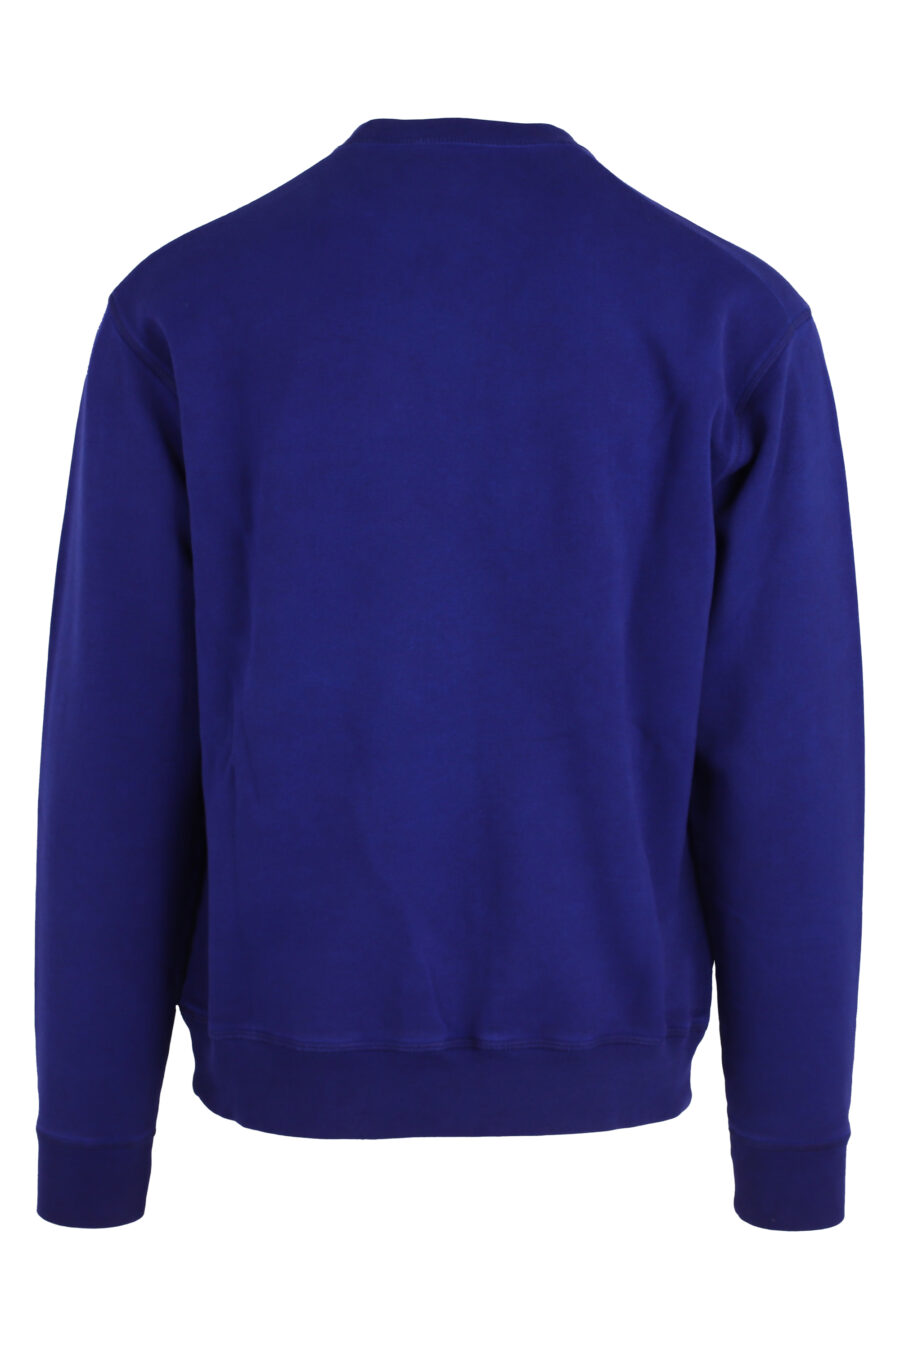 Blaues Sweatshirt mit weißem Umrisslogo - IMG 4754